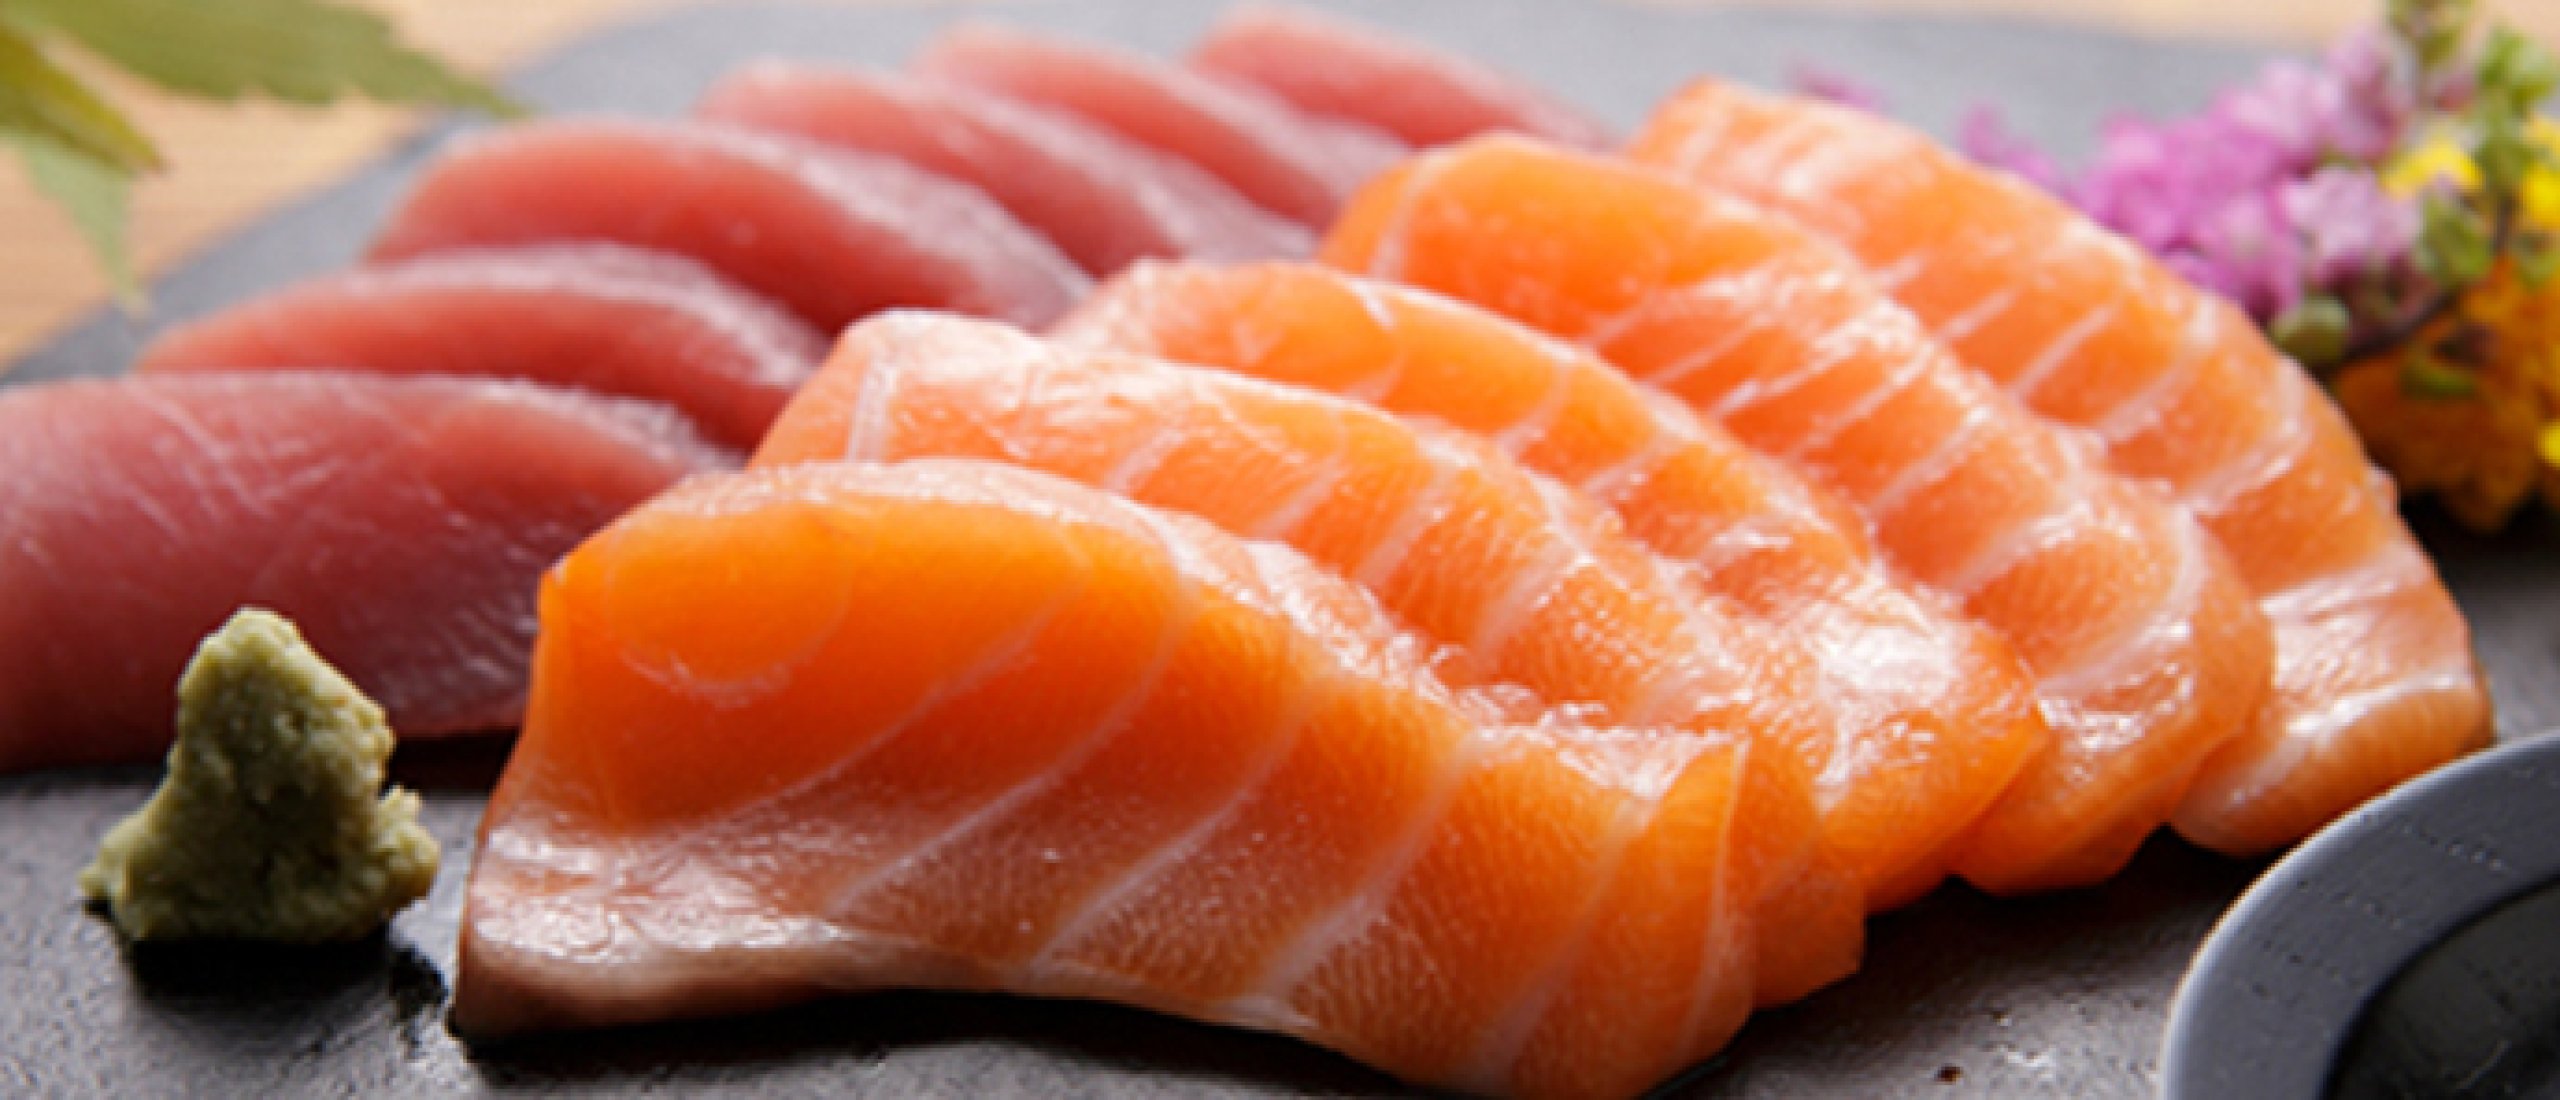 Zelf leren om sashimi te maken? 7 belangrijke stappen die je moet toepassen!